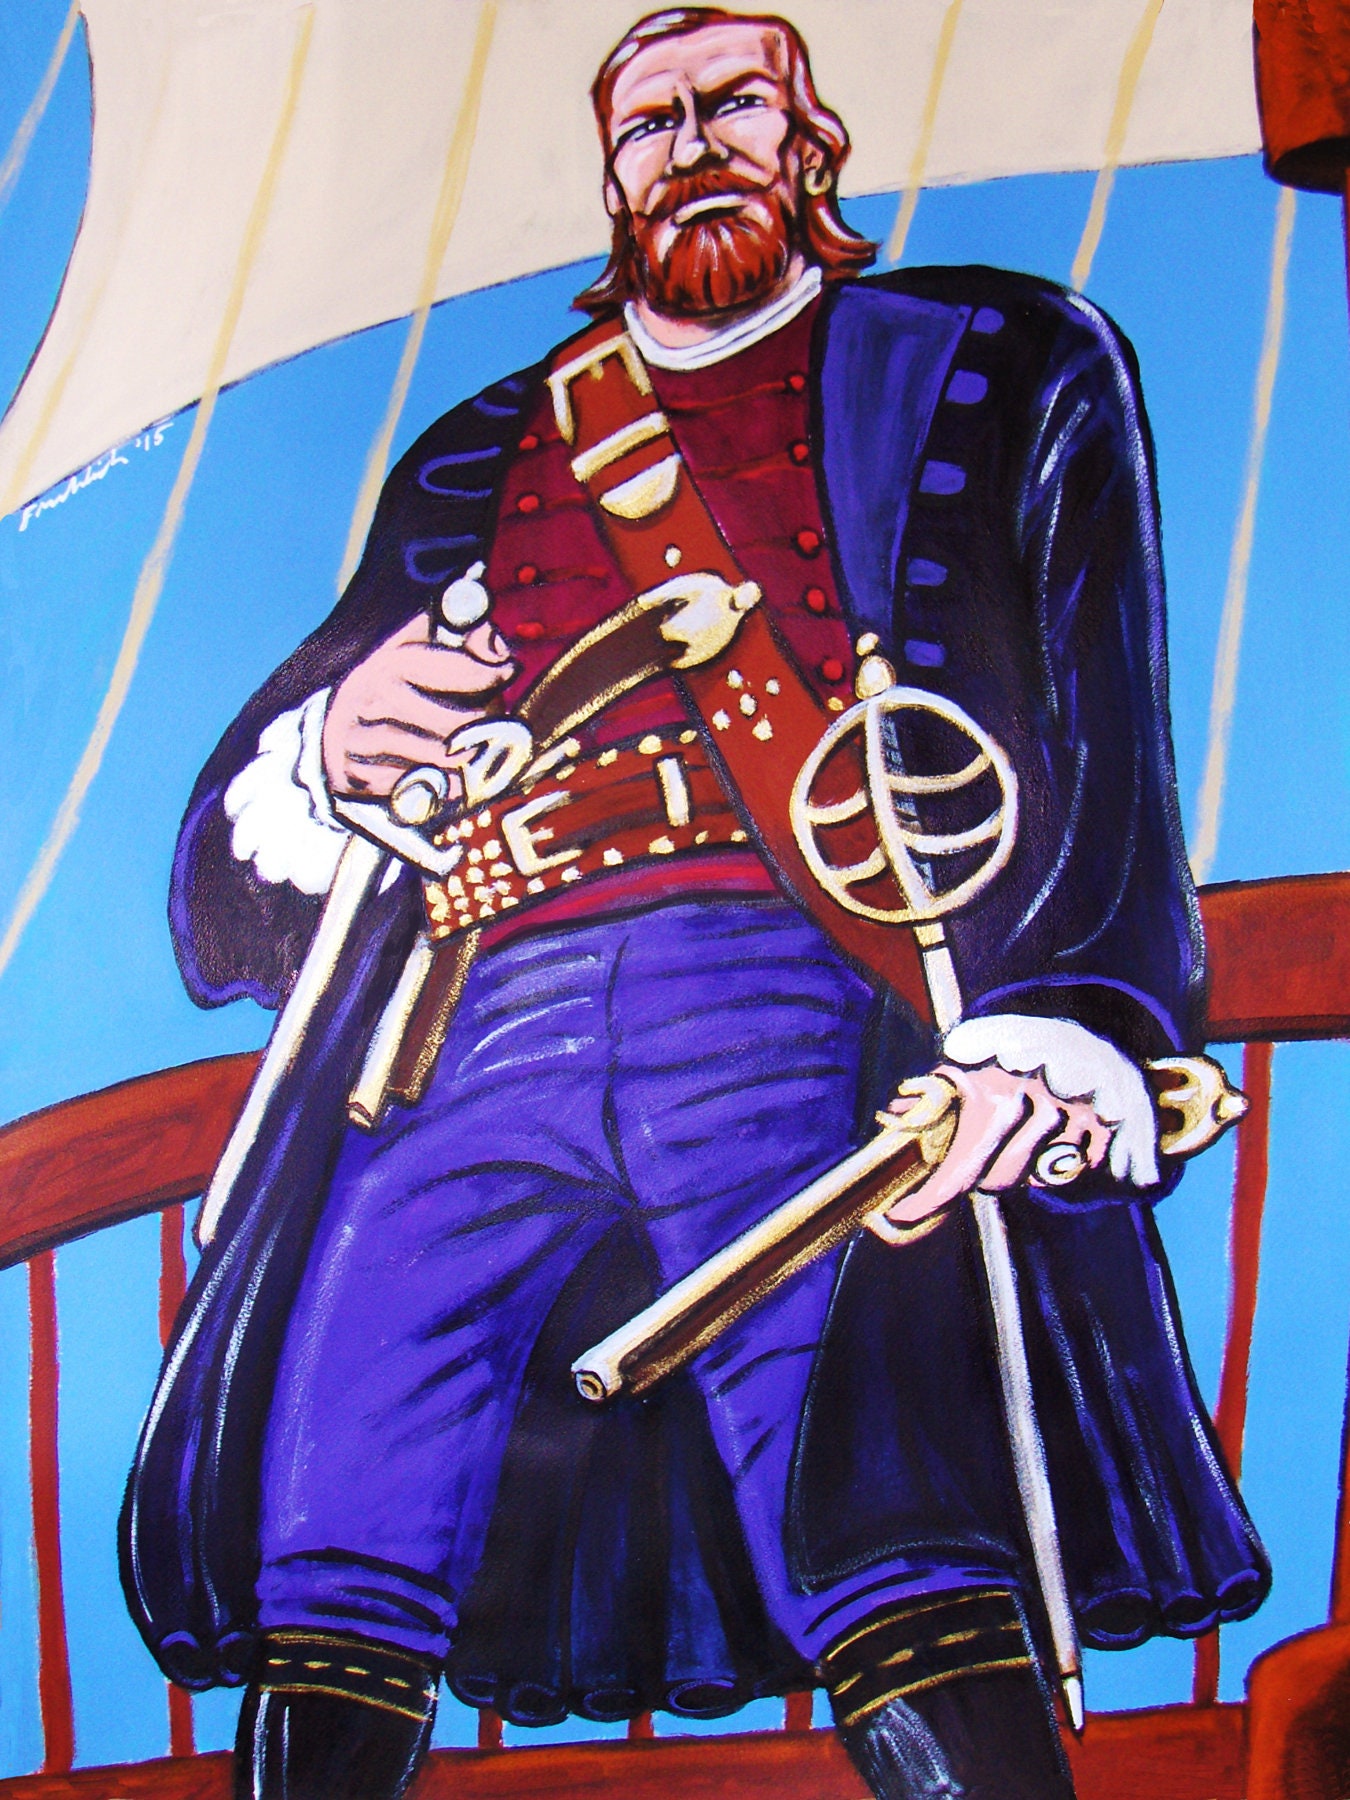  Black Sails Toby Stephens as Captain Flint Close Up